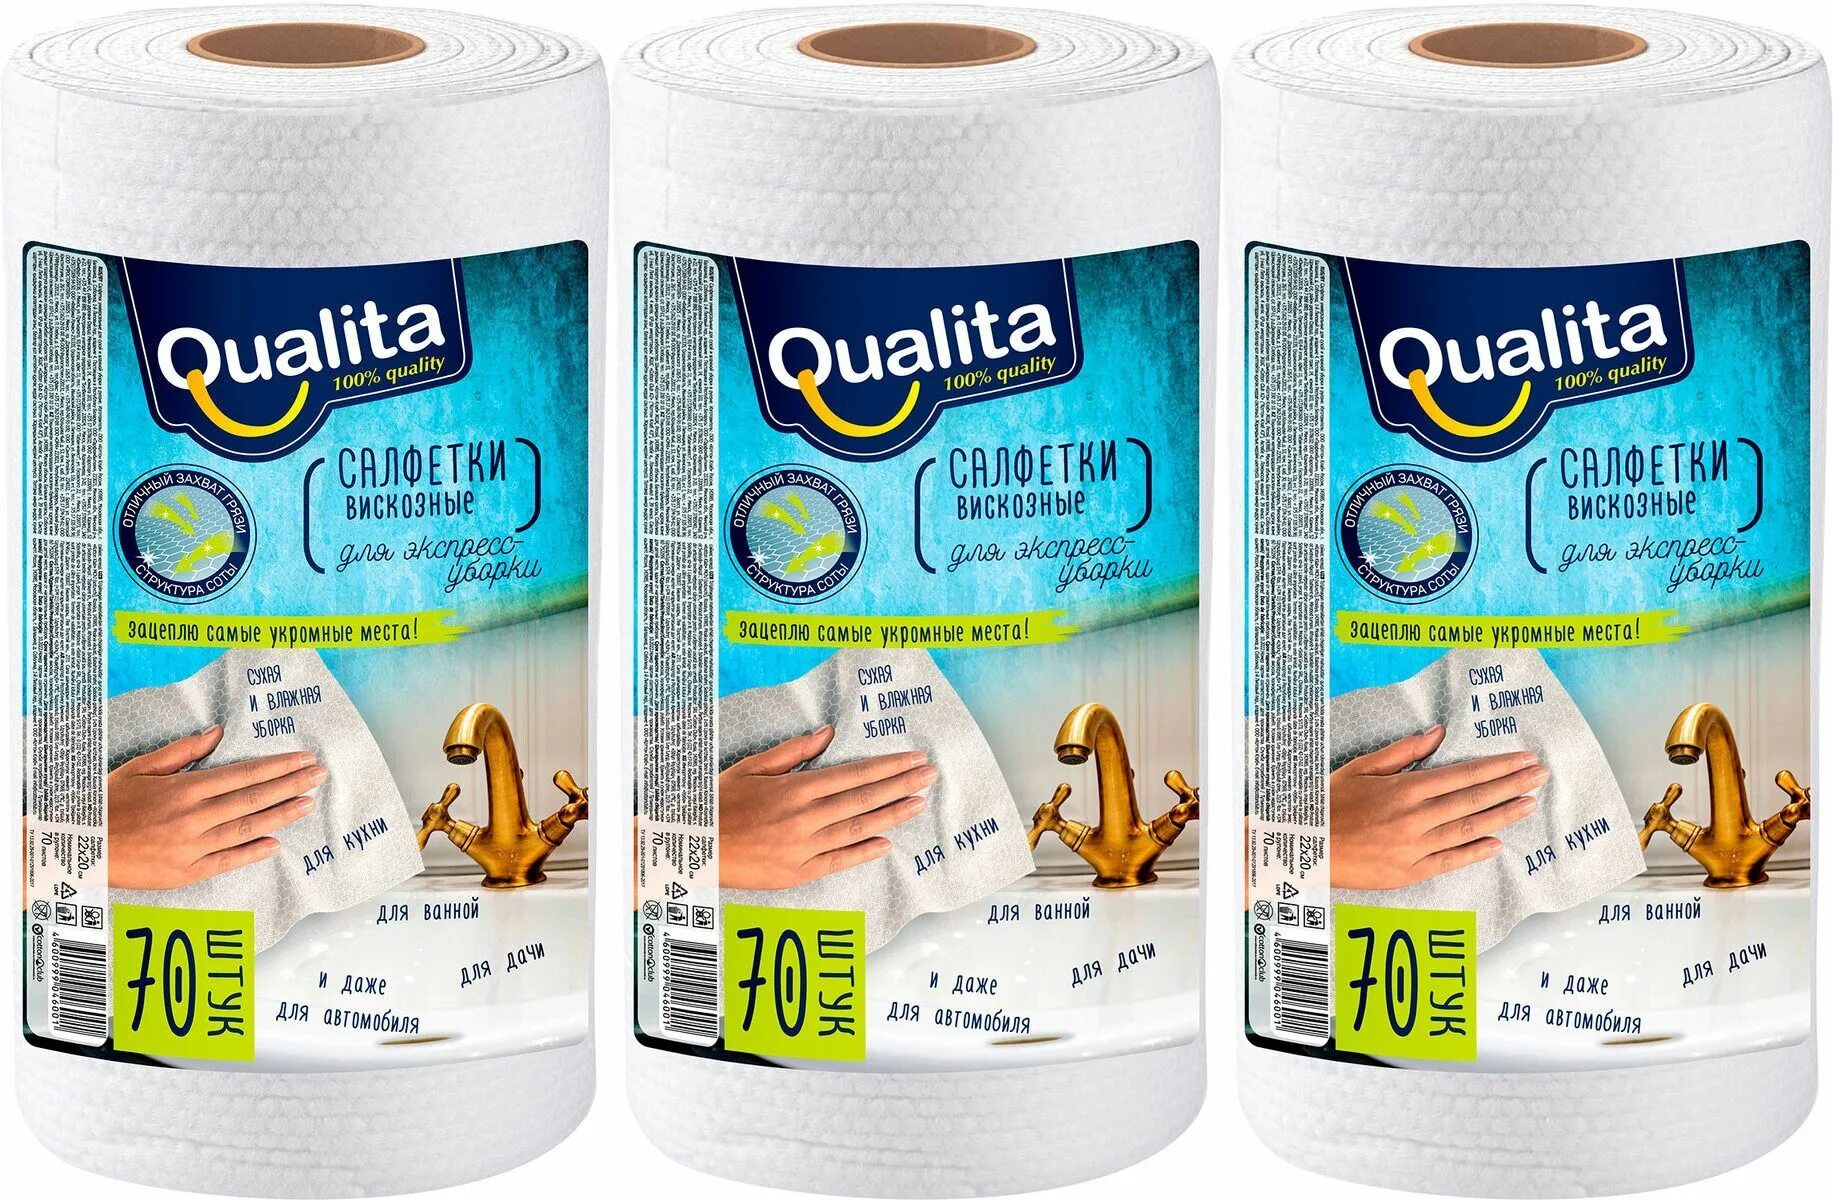 Qualita Optima салфетки в рулоне вискозные 70шт. Qualita вискозные салфетки Optima в рулоне 120 шт рулон. Салфетки вискозные в рулоне Grifon Cleaning. Салфетки вискозные в рулоне Grifon Color.